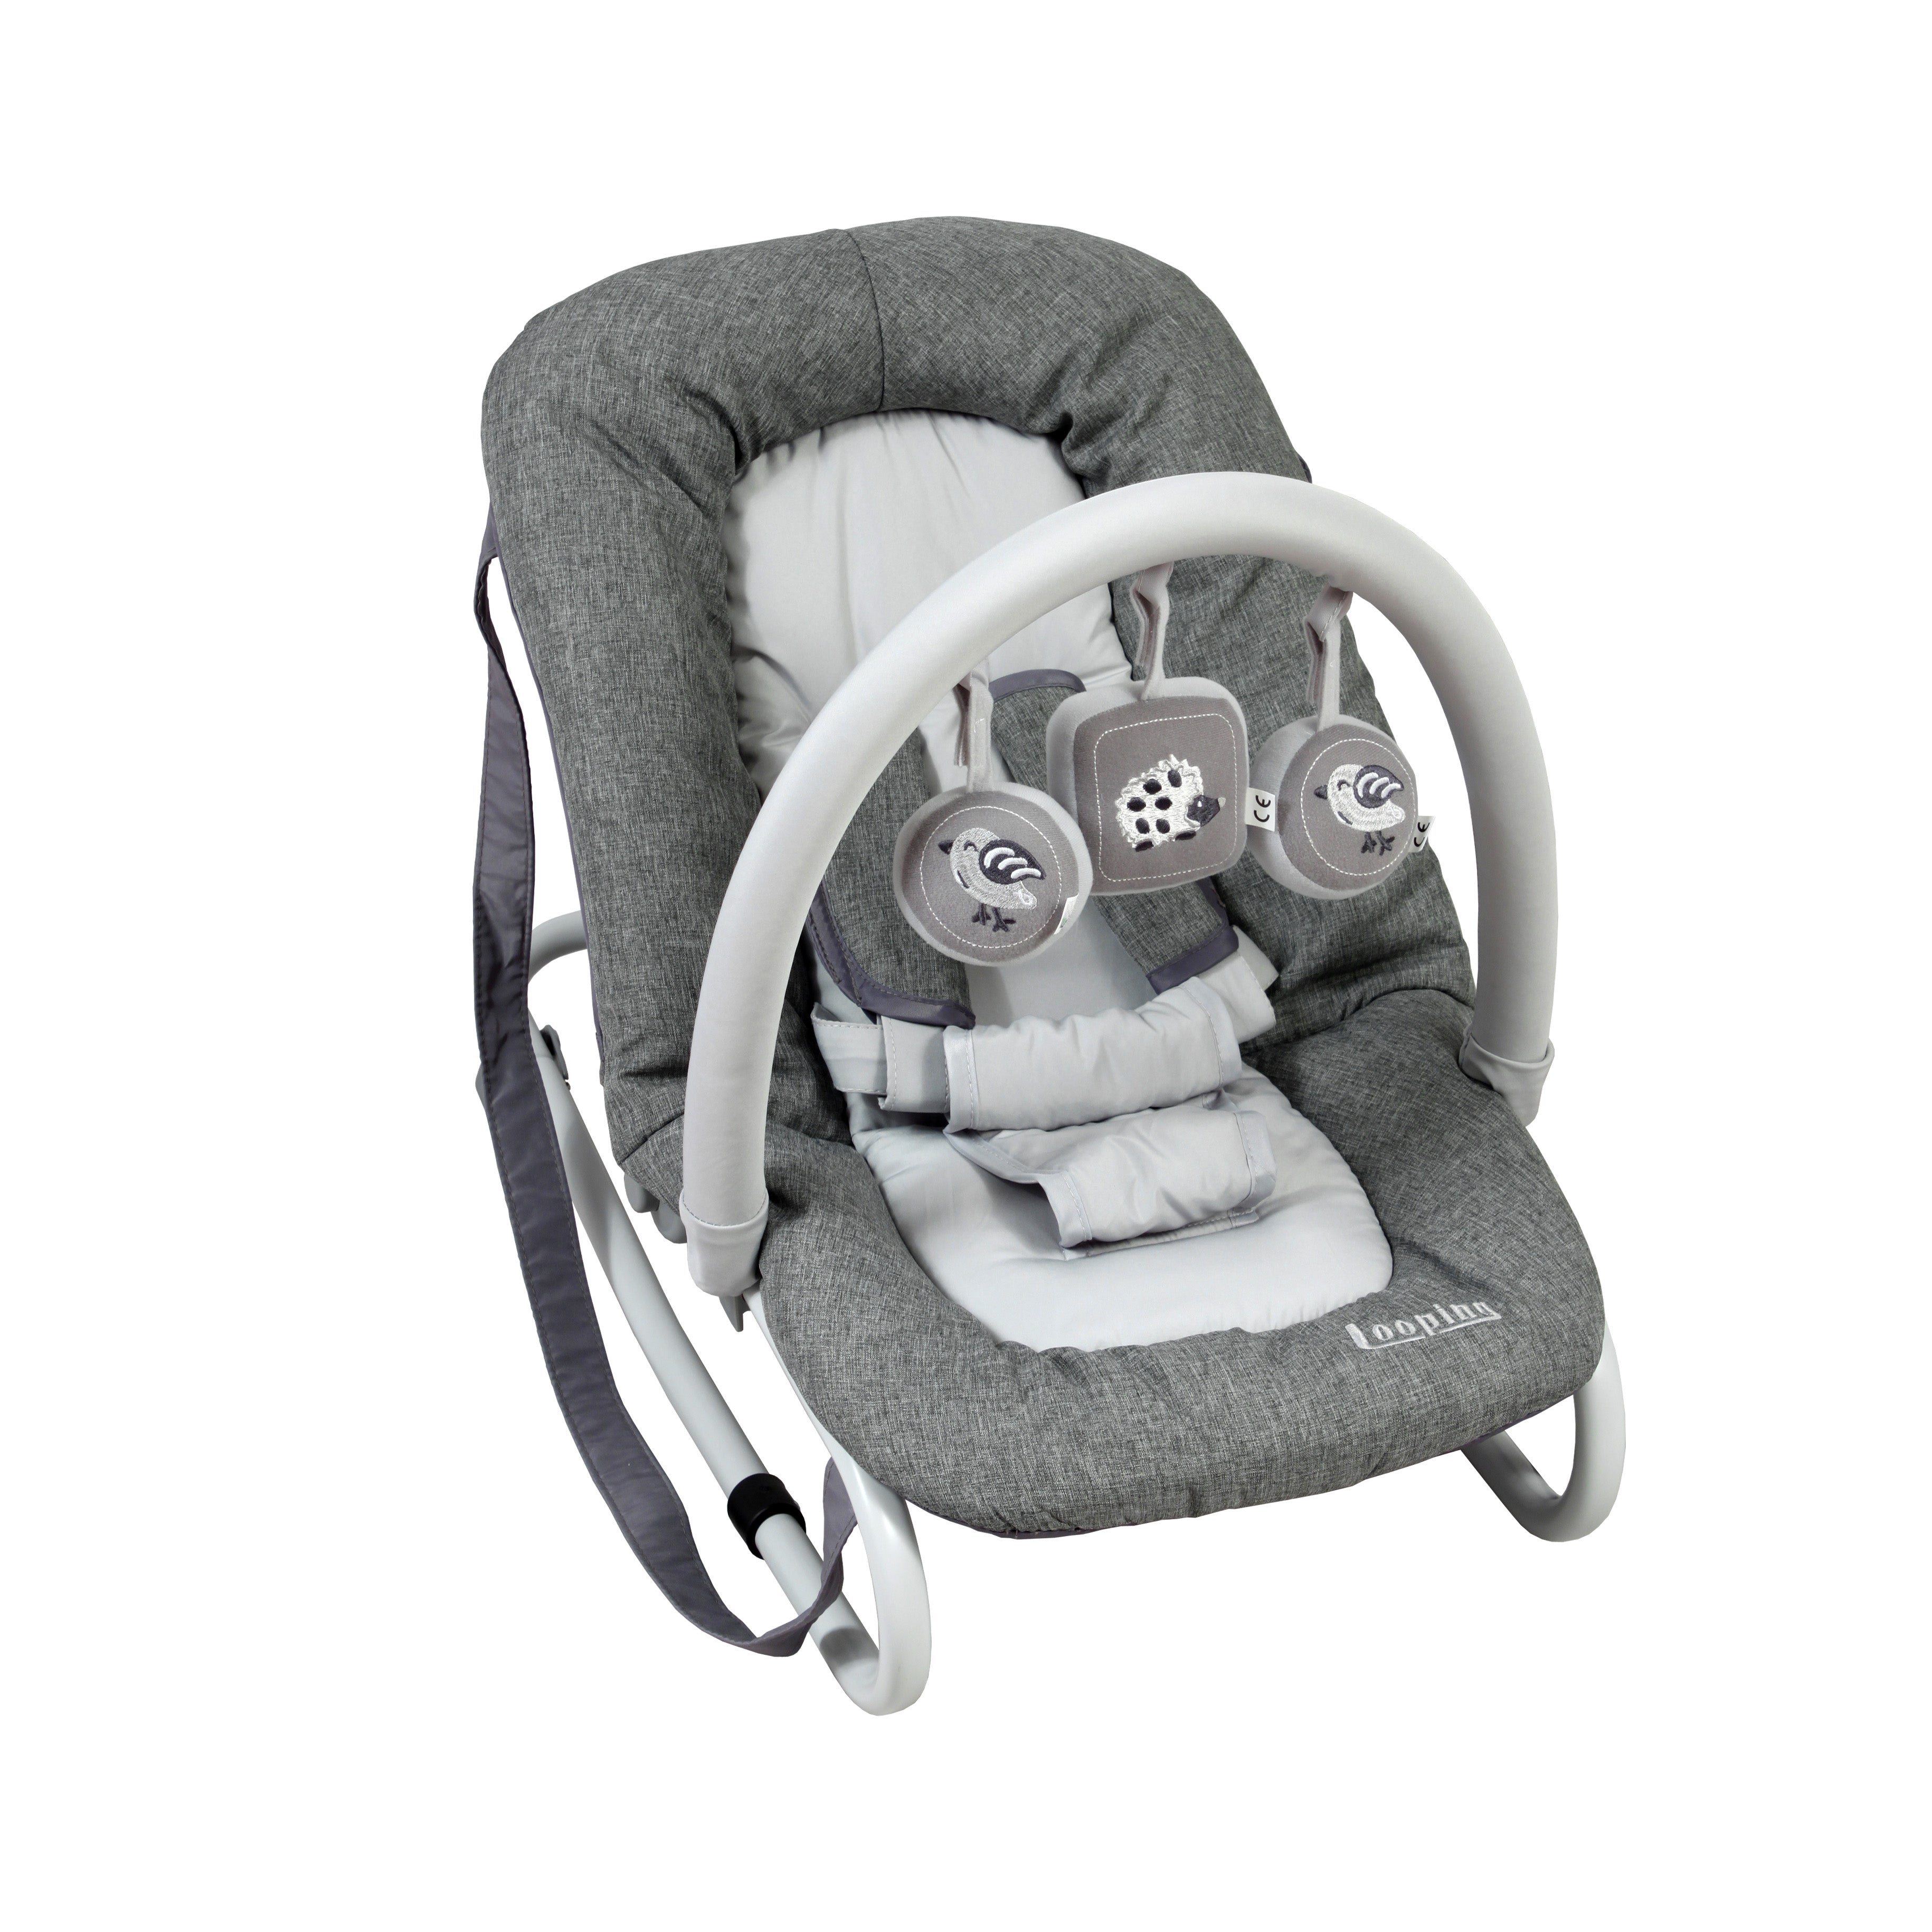 Transat bébé avec assise et arche de jeu inclinable de 0 à 6 mois